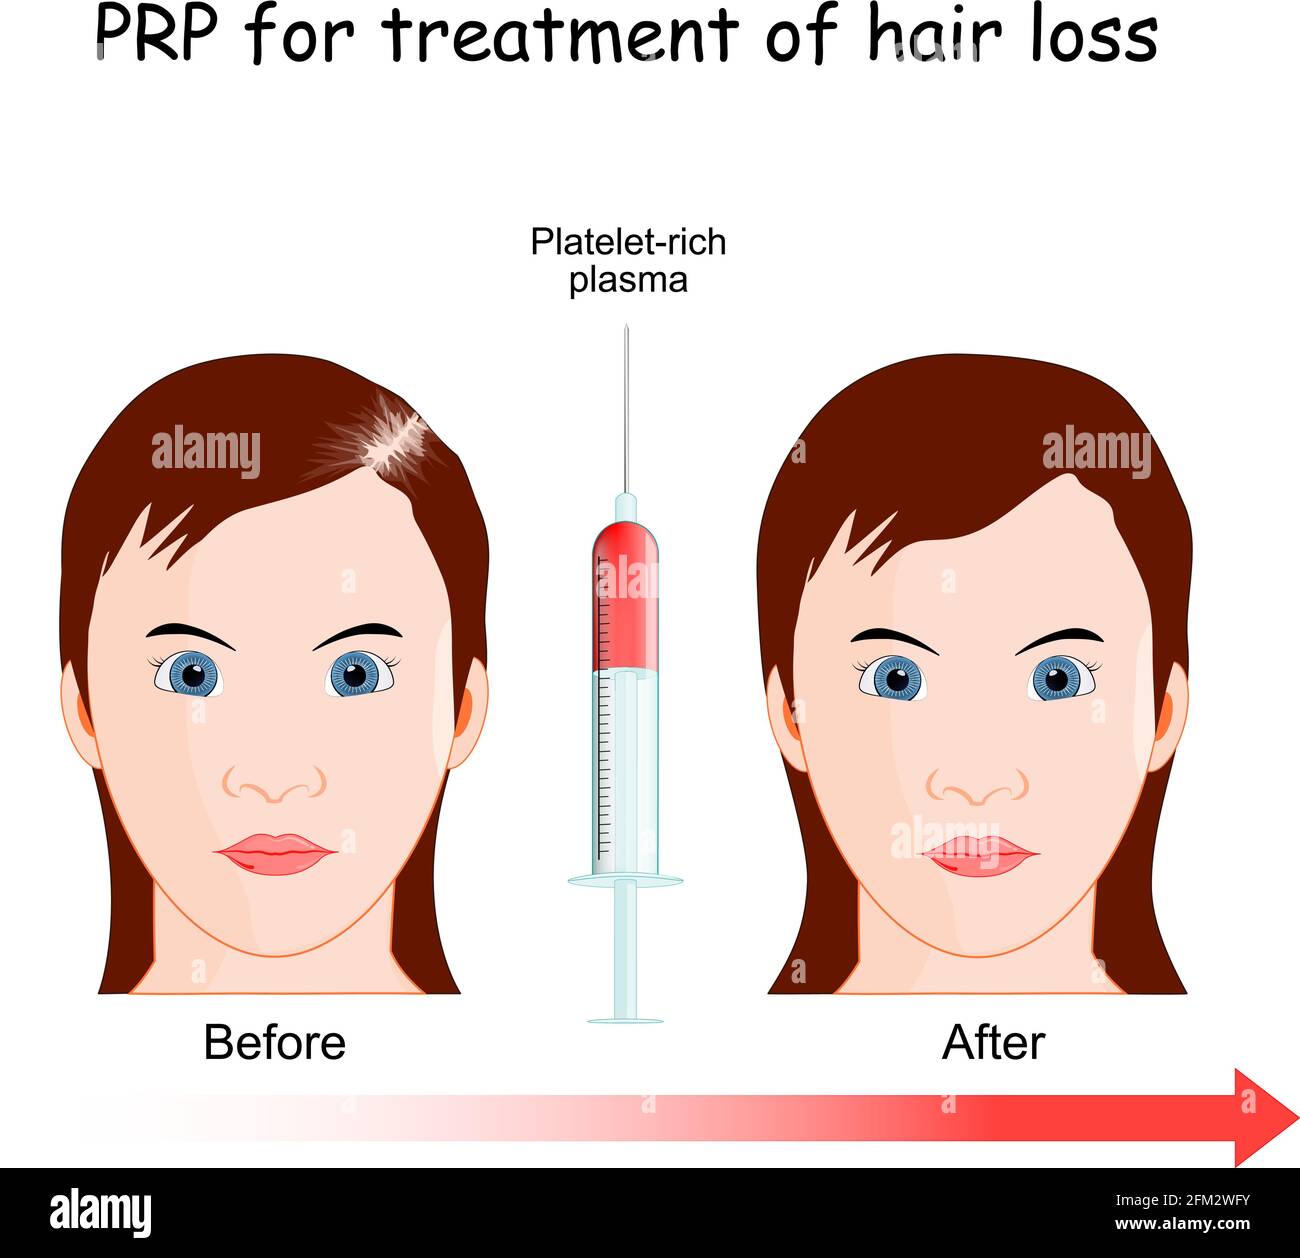 Plasma ricco di piastrine. Procedura PRP per il trattamento della perdita dei capelli. Donna con alopecia prima e dopo l'iniezione. Illustrazione Vettoriale